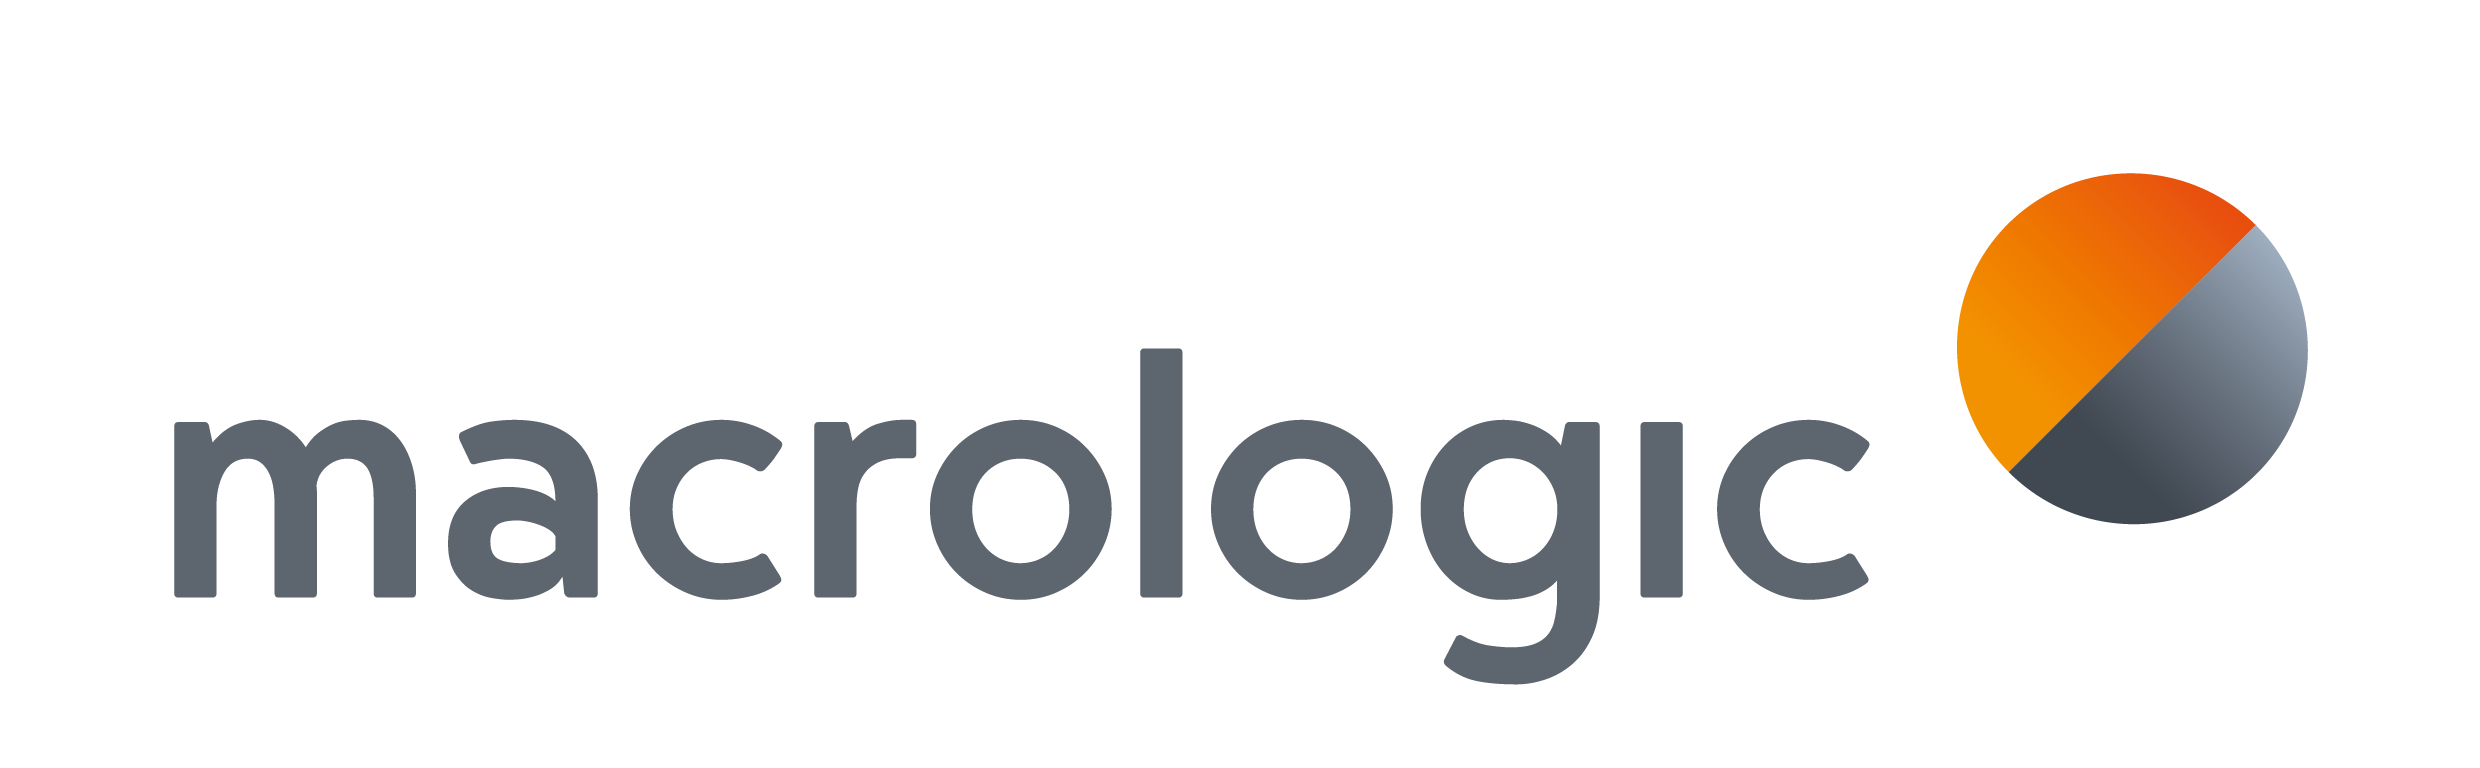 Macrologic: nowe logo i zmiany